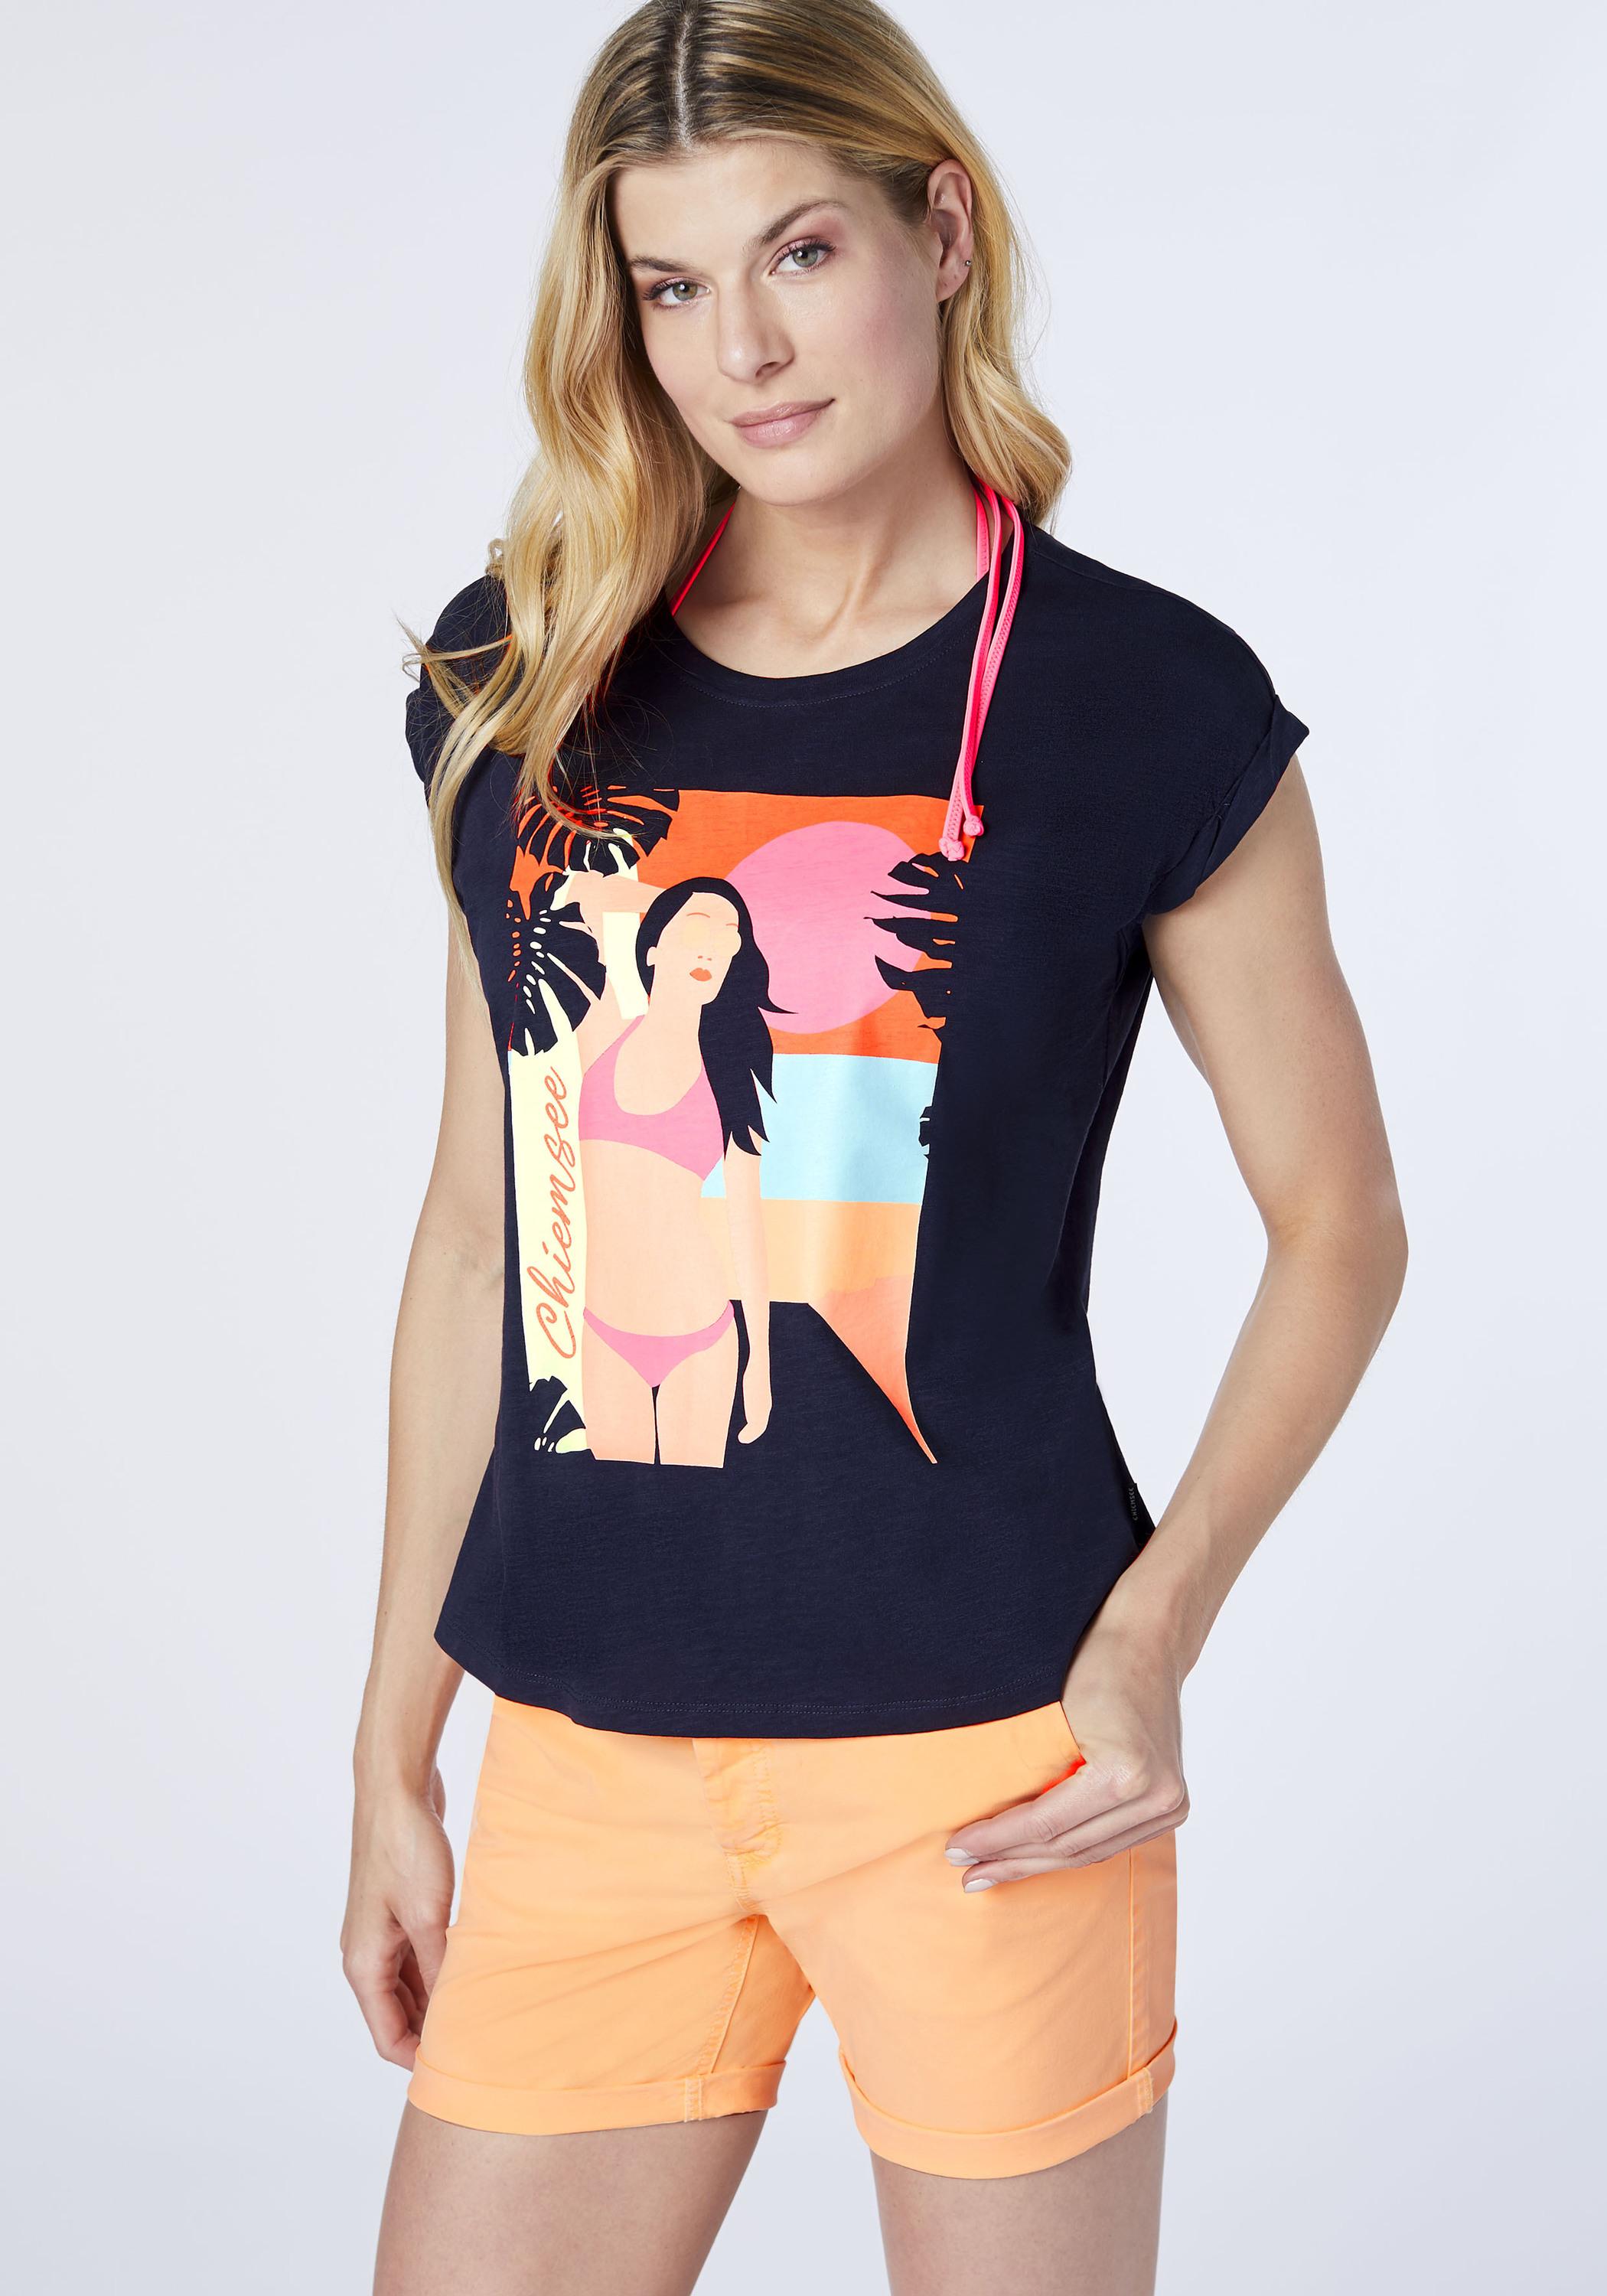 Chiemsee T-Shirt T-Shirt Damen Night von Shop Online Sky im SportScheck kaufen